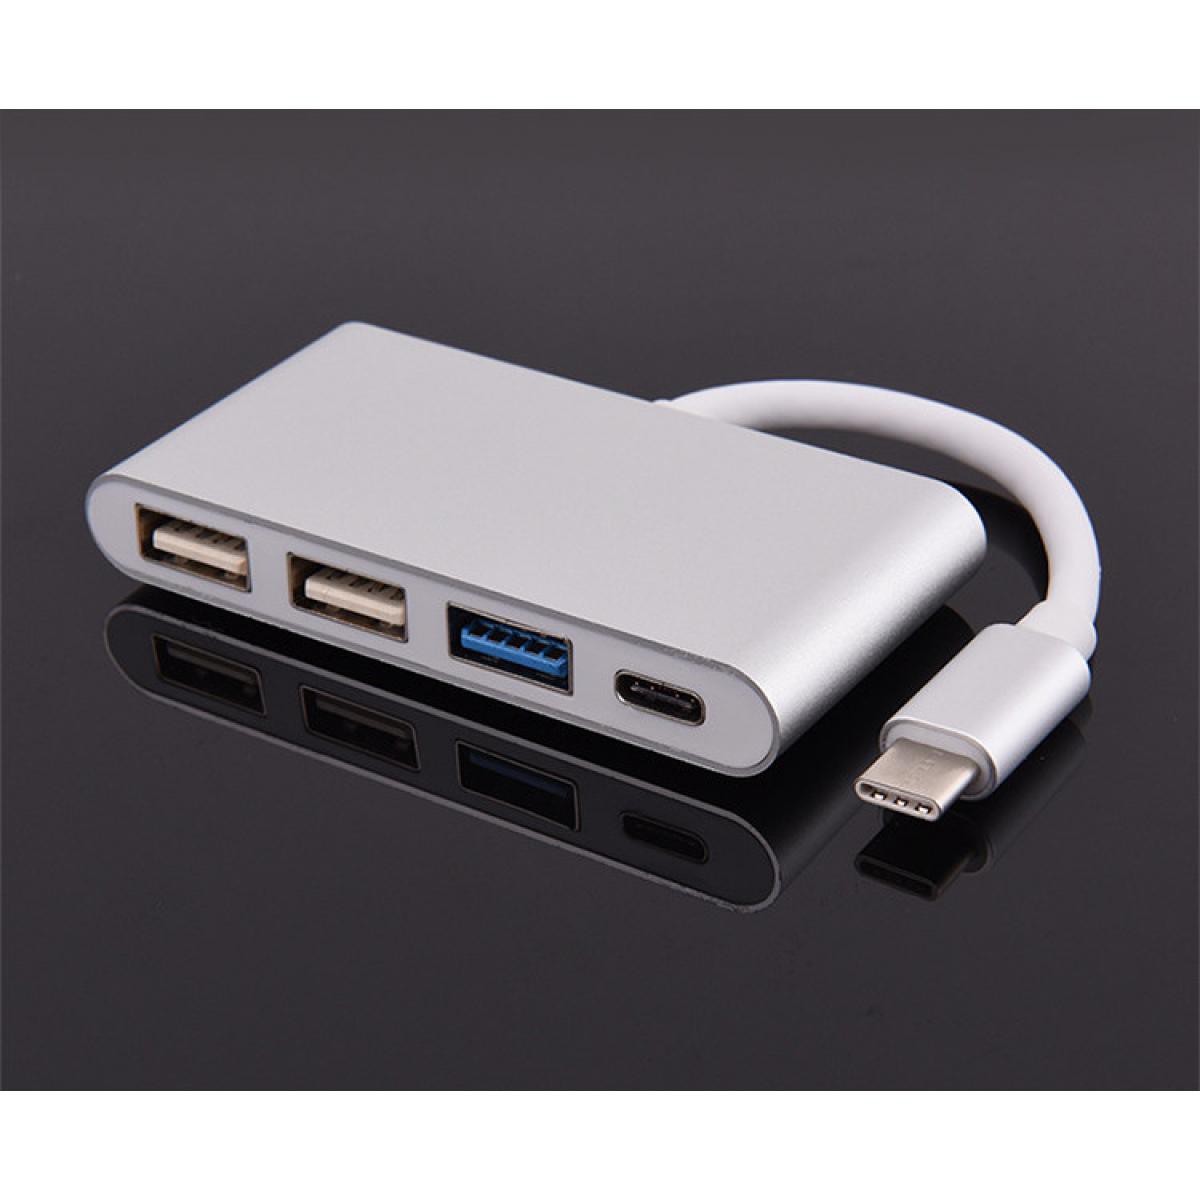 Shot - Multi Adaptateur 4 en 1 Type C pour MEIZU MX6 Smartphone Hub 2 ports USB 2.0 1 Port USB 3.0 (ARGENT) - Hub